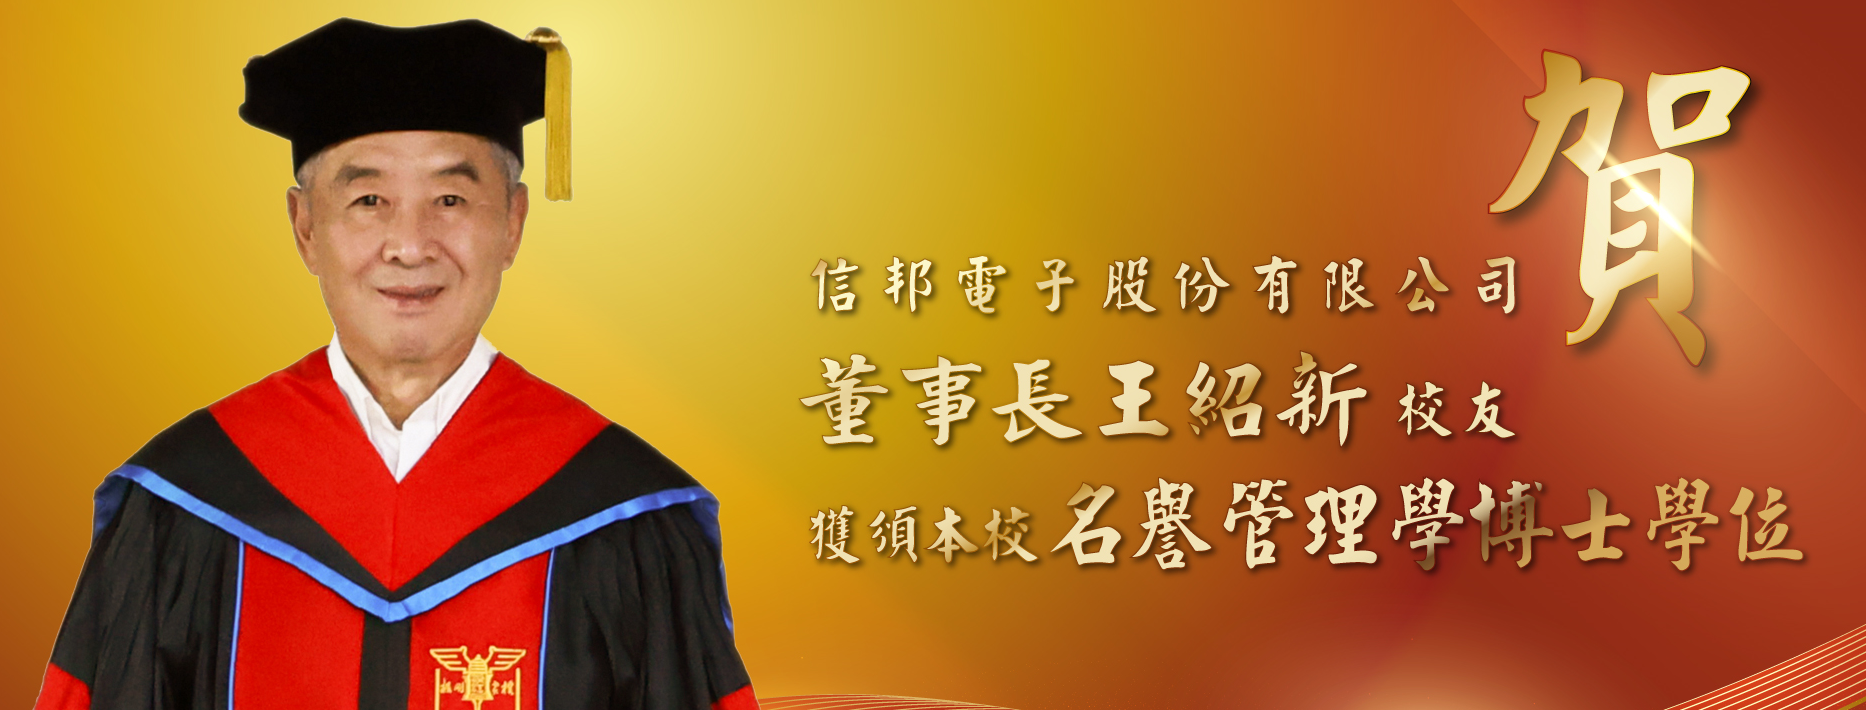 王绍新获颁名誉博士